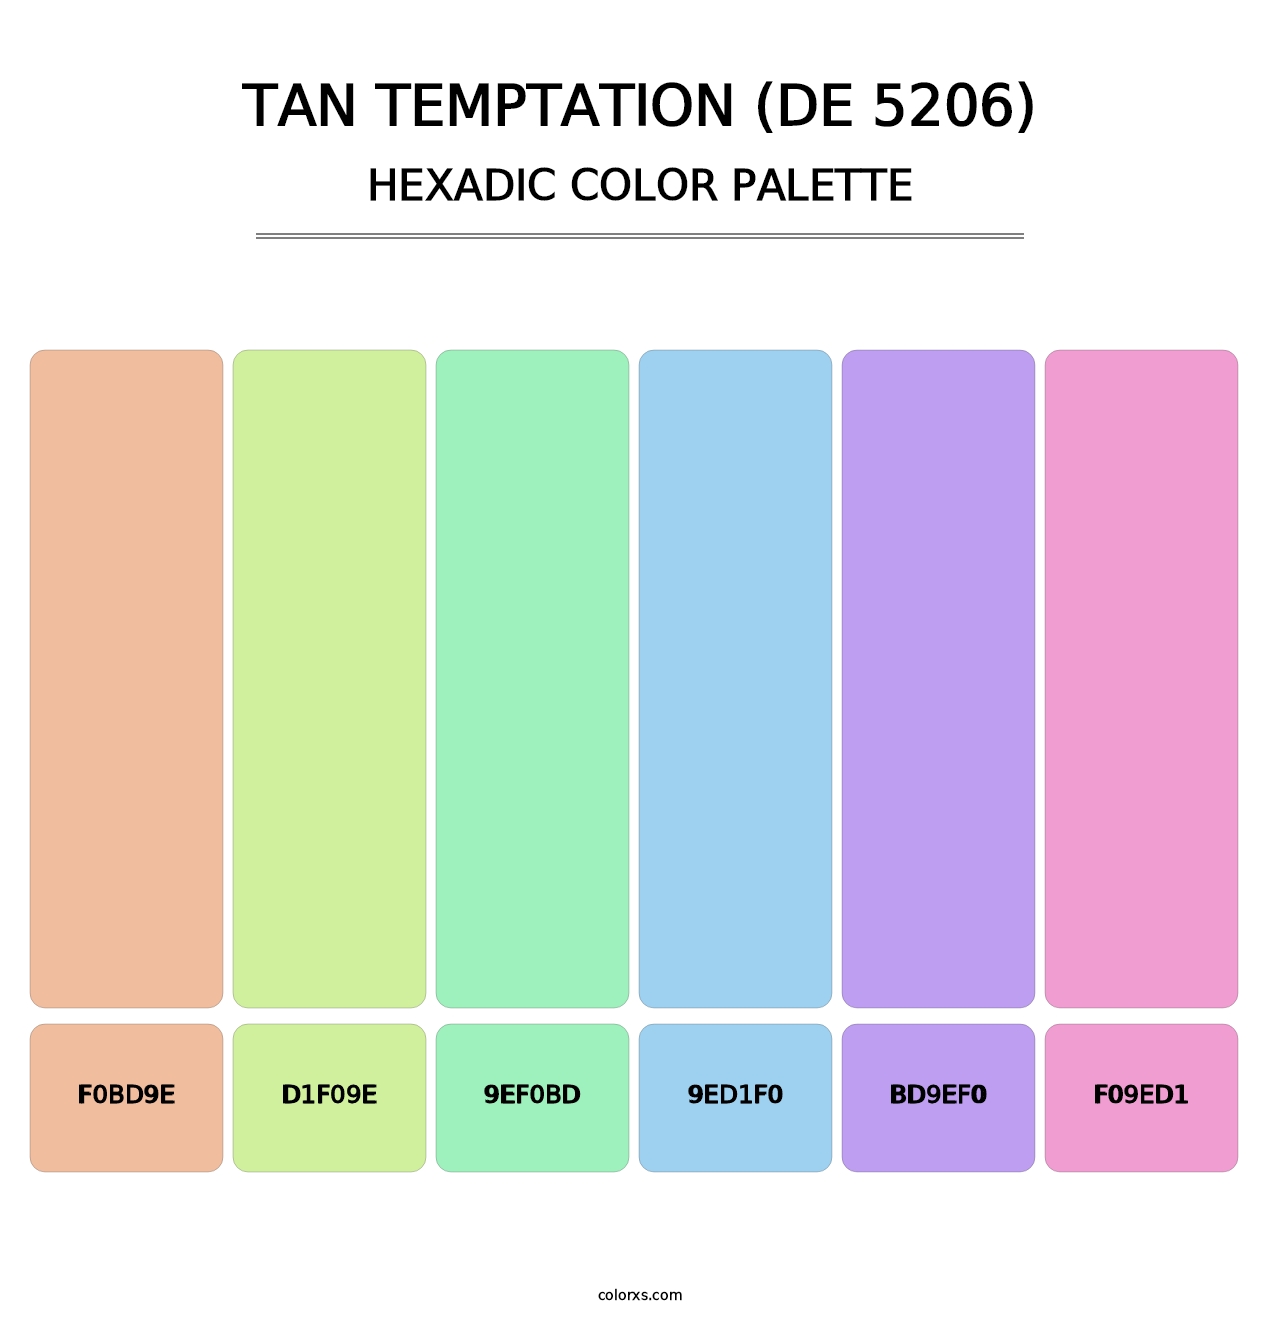 Tan Temptation (DE 5206) - Hexadic Color Palette